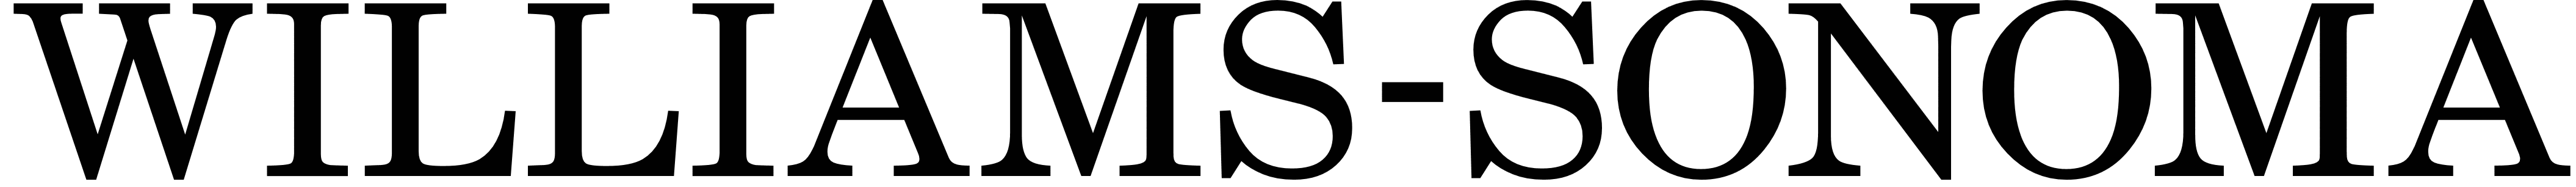 Williams-Sonoma logo, logotype